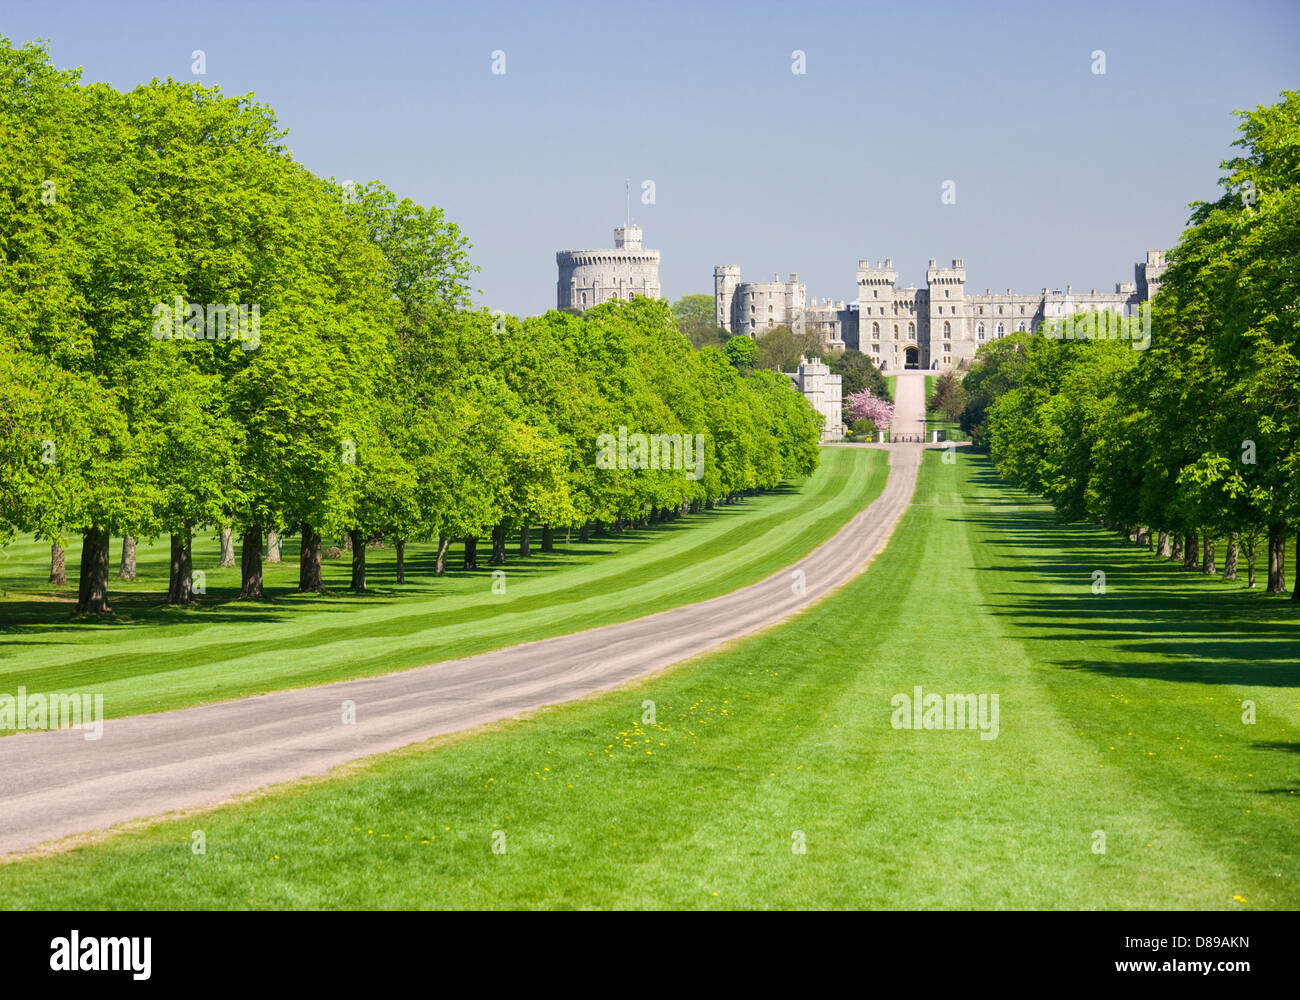 Le Château de Windsor à partir de la Longue Marche, Berkshire, Angleterre, Royaume-Uni. Banque D'Images